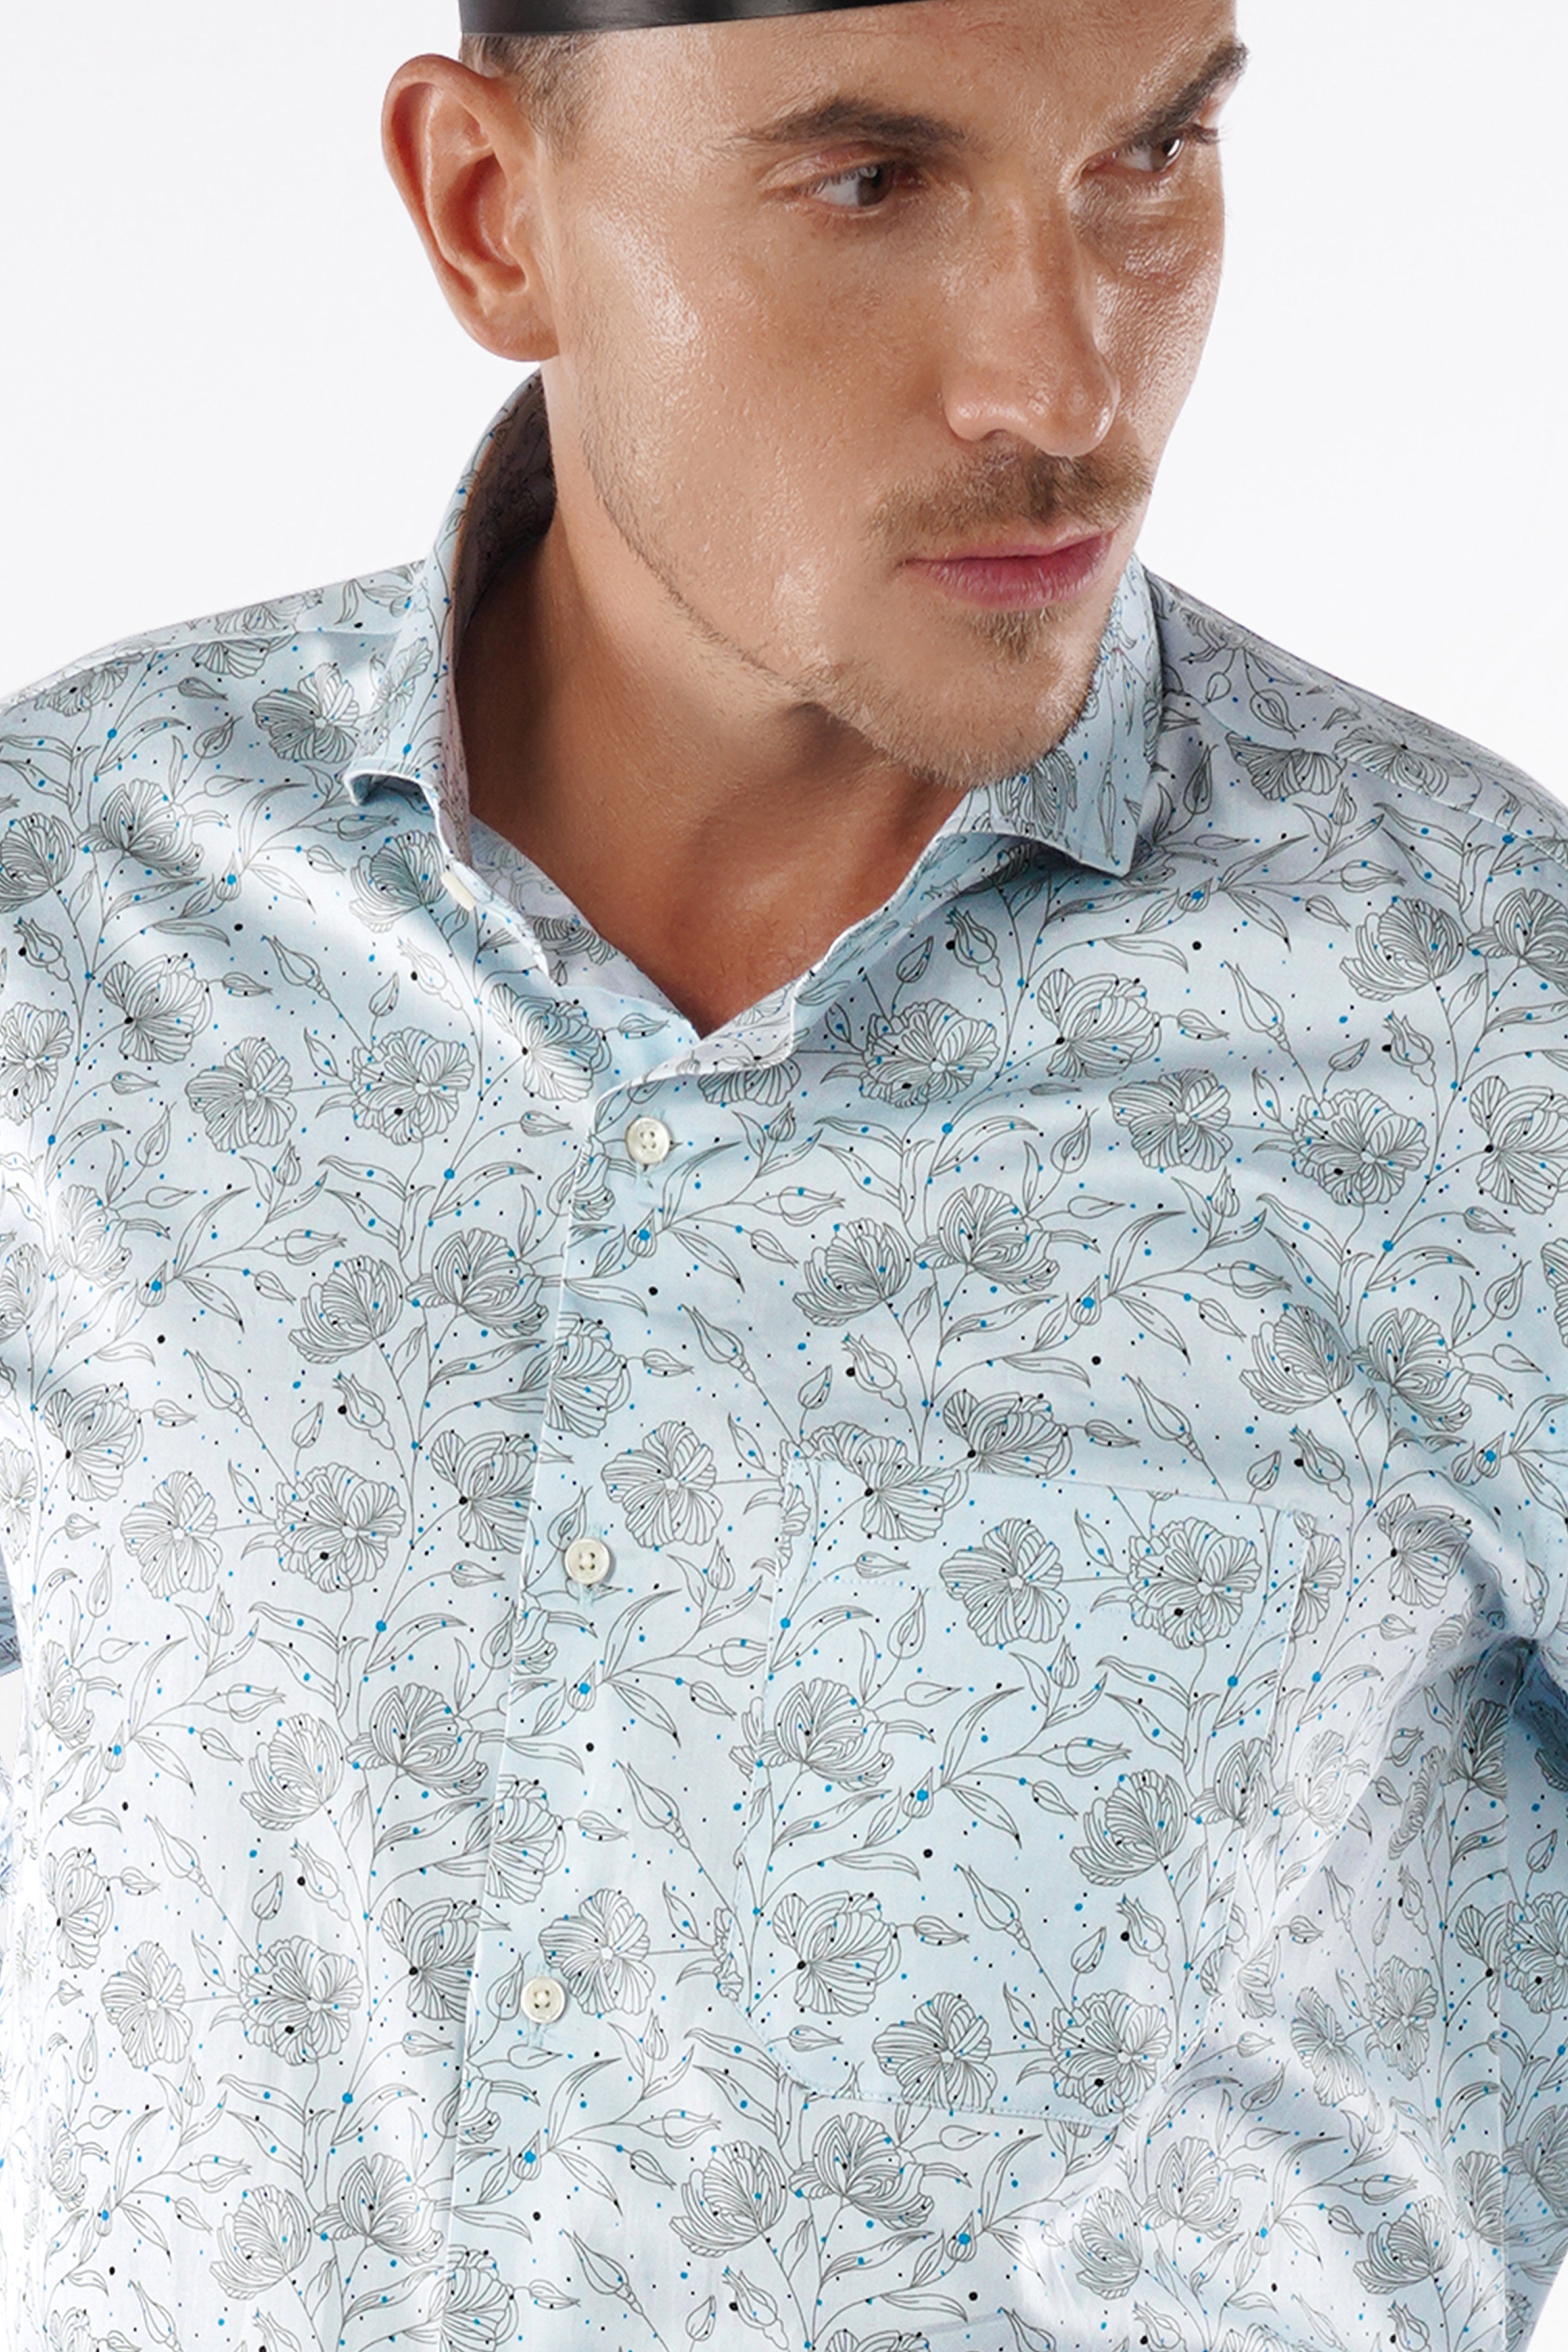 Blizzard Blue Floral Printed Super Soft Premium Cotton Shirt